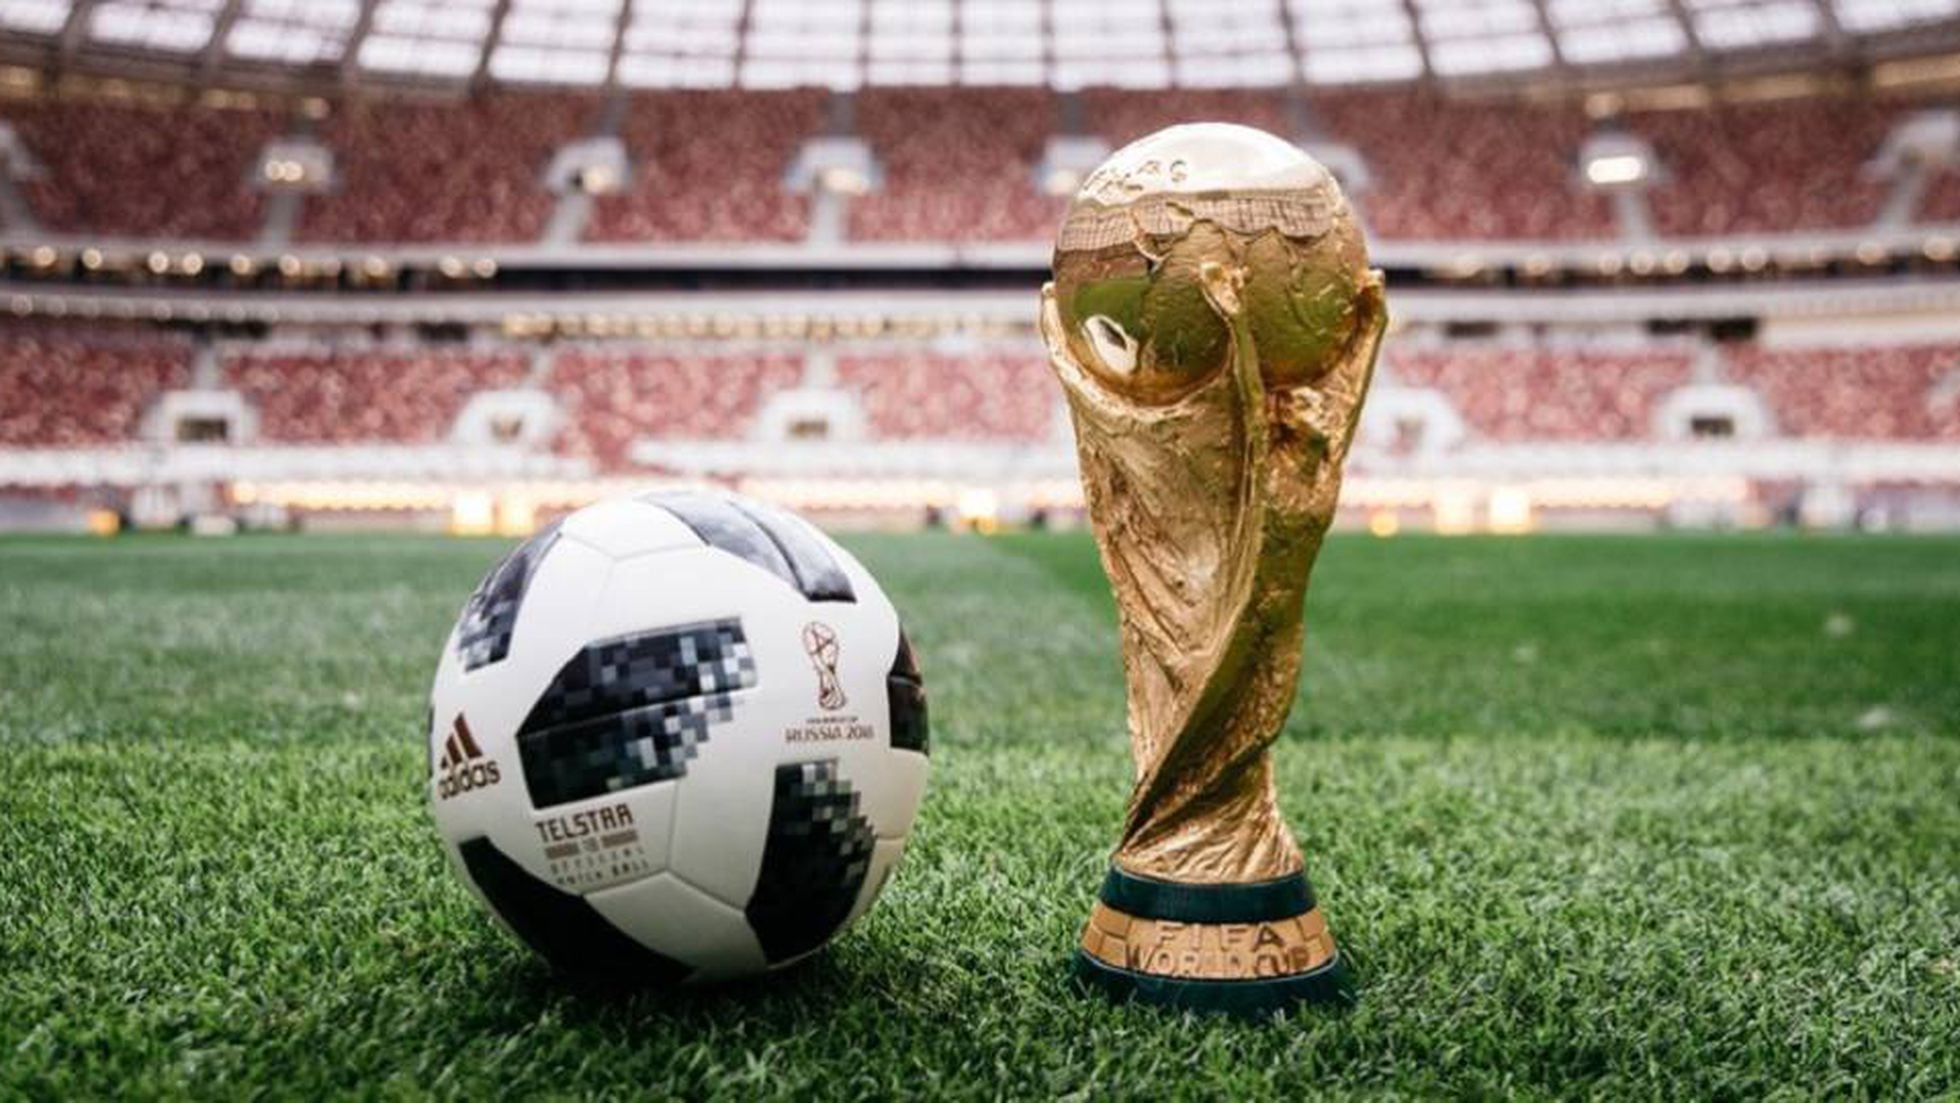 Velocidad supersónica violencia aplausos Telstar 18: así es el balón del Mundial de Rusia 2018 | Deportes | EL PAÍS